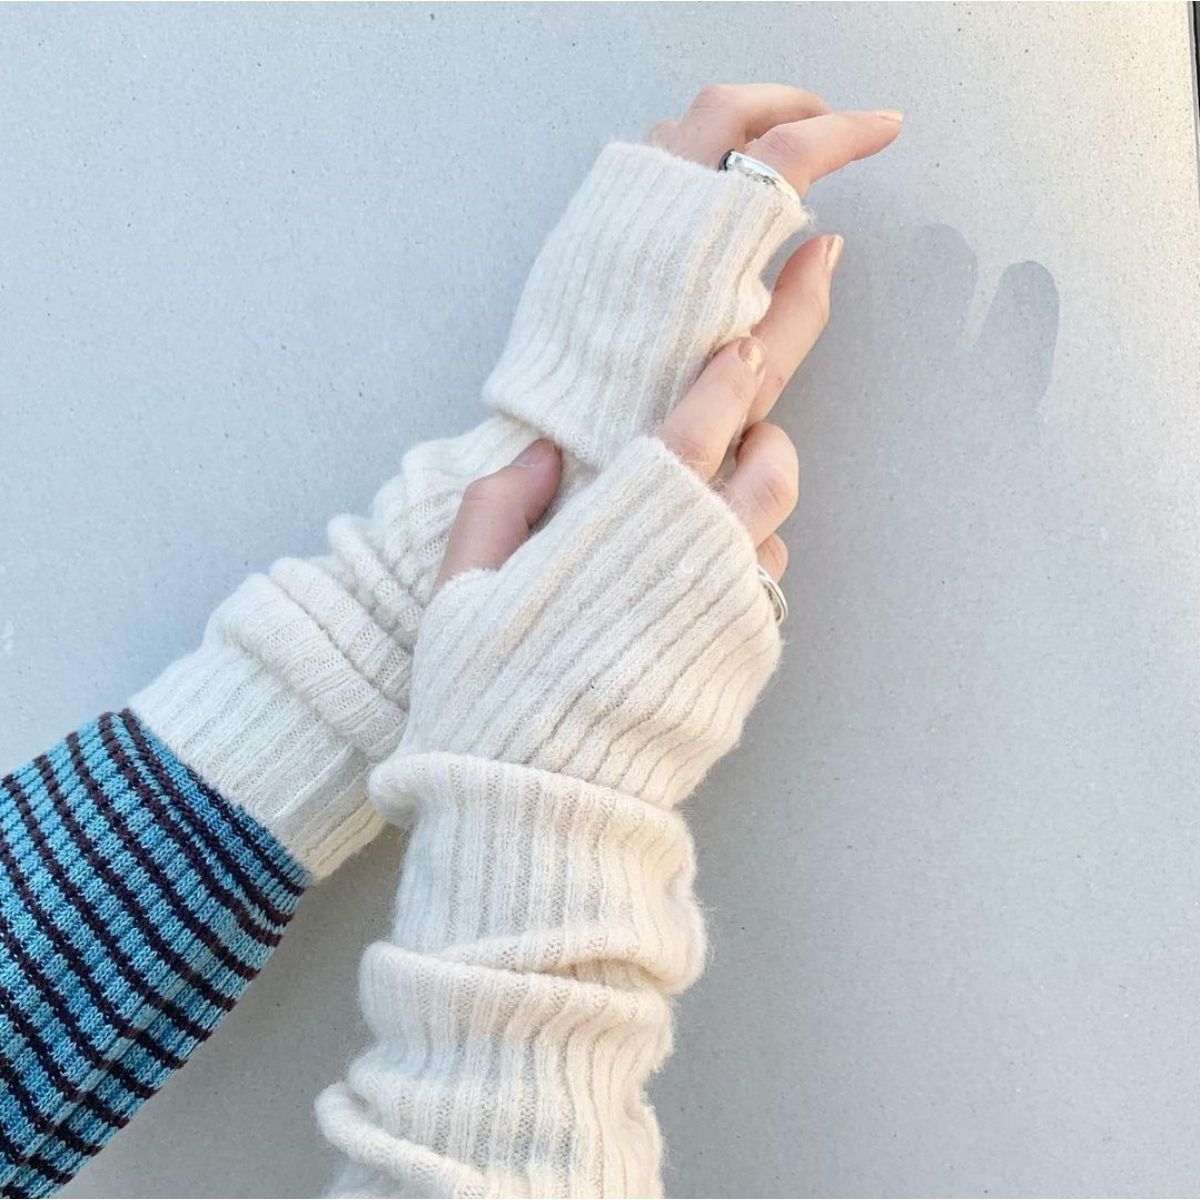 今年の冬は「アームウォーマー」であざと萌え袖しよ。手袋よりずっとかわいい“Kastane”の人気アイテムはこれ